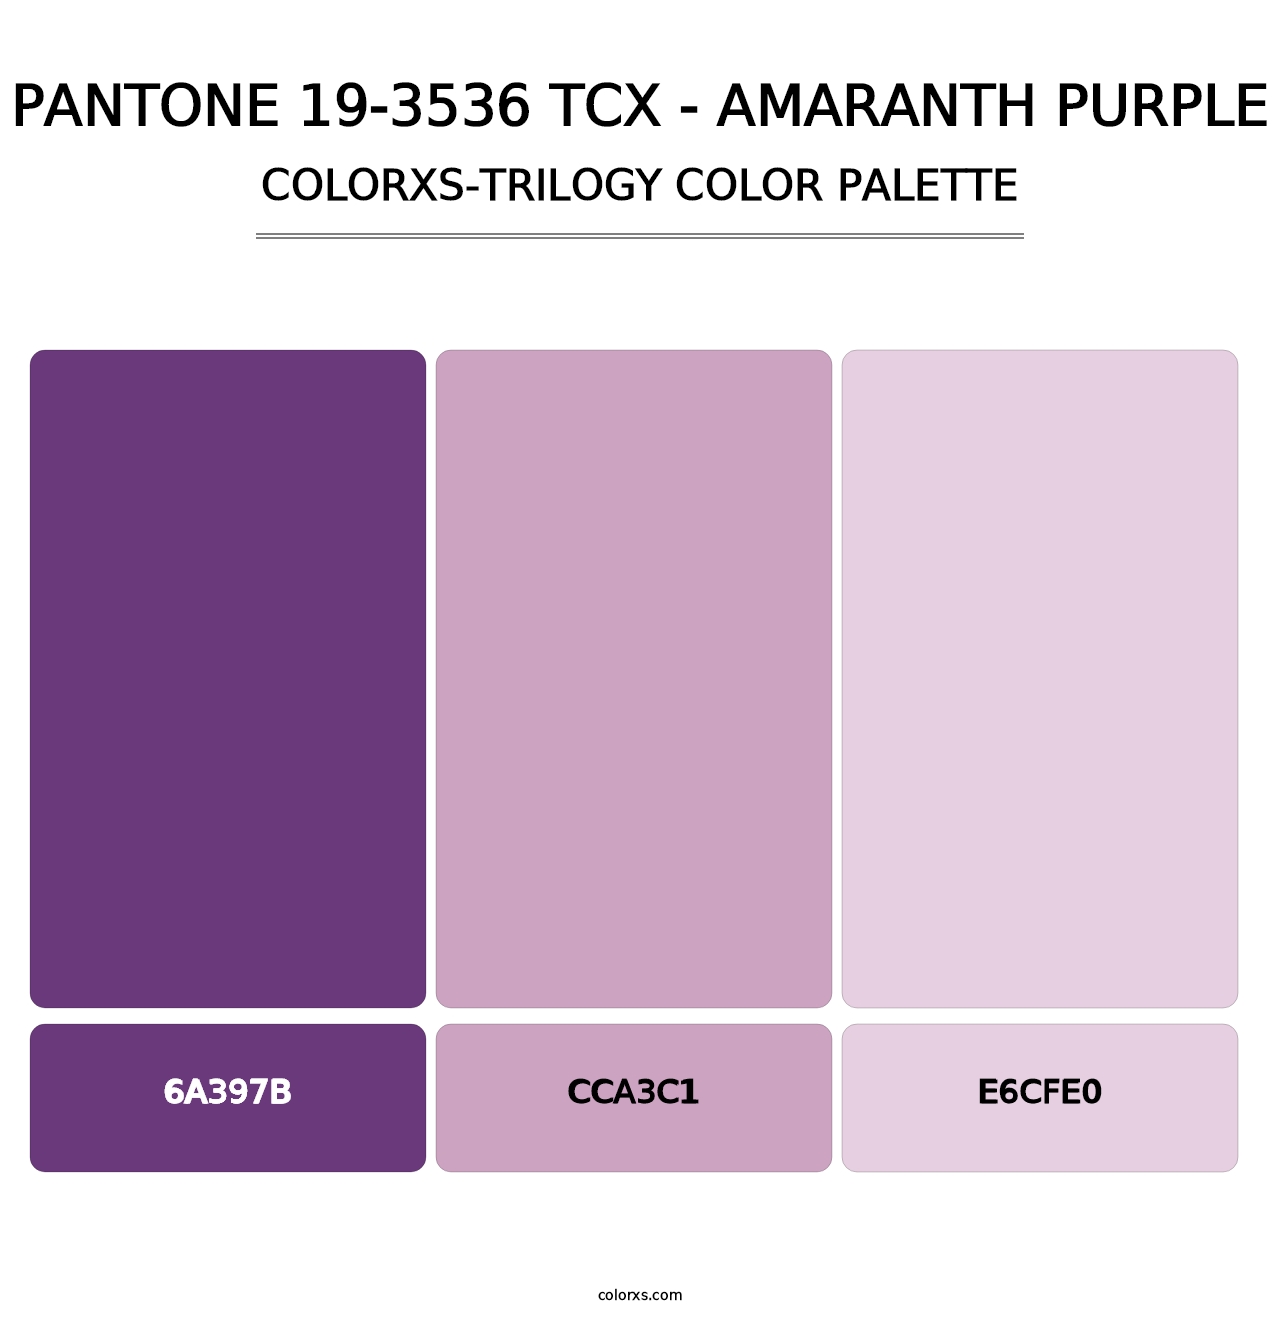 PANTONE 19-3536 TCX - Amaranth Purple - Colorxs Trilogy Palette